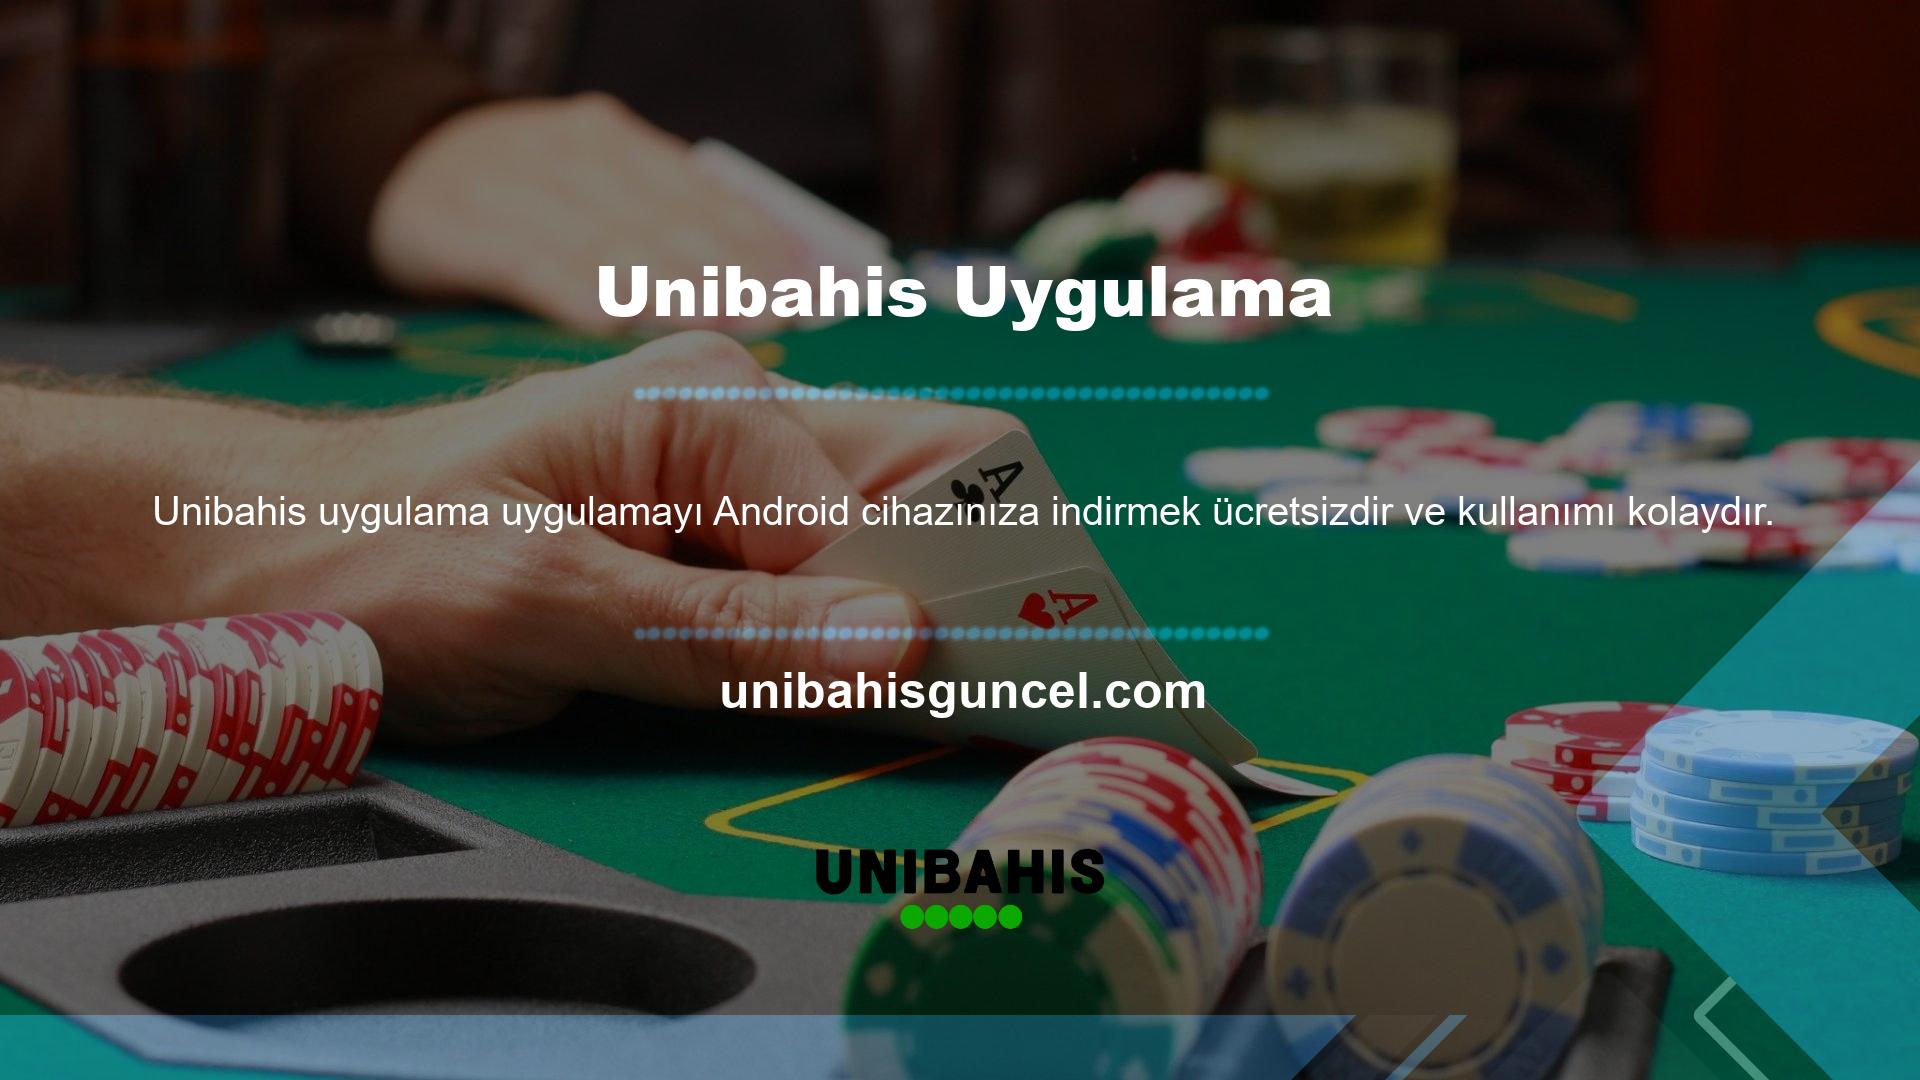 Uygulamayı indirmek isteyen herkesin öncelikle Unibahis web sitesine kayıt olması gerekmektedir